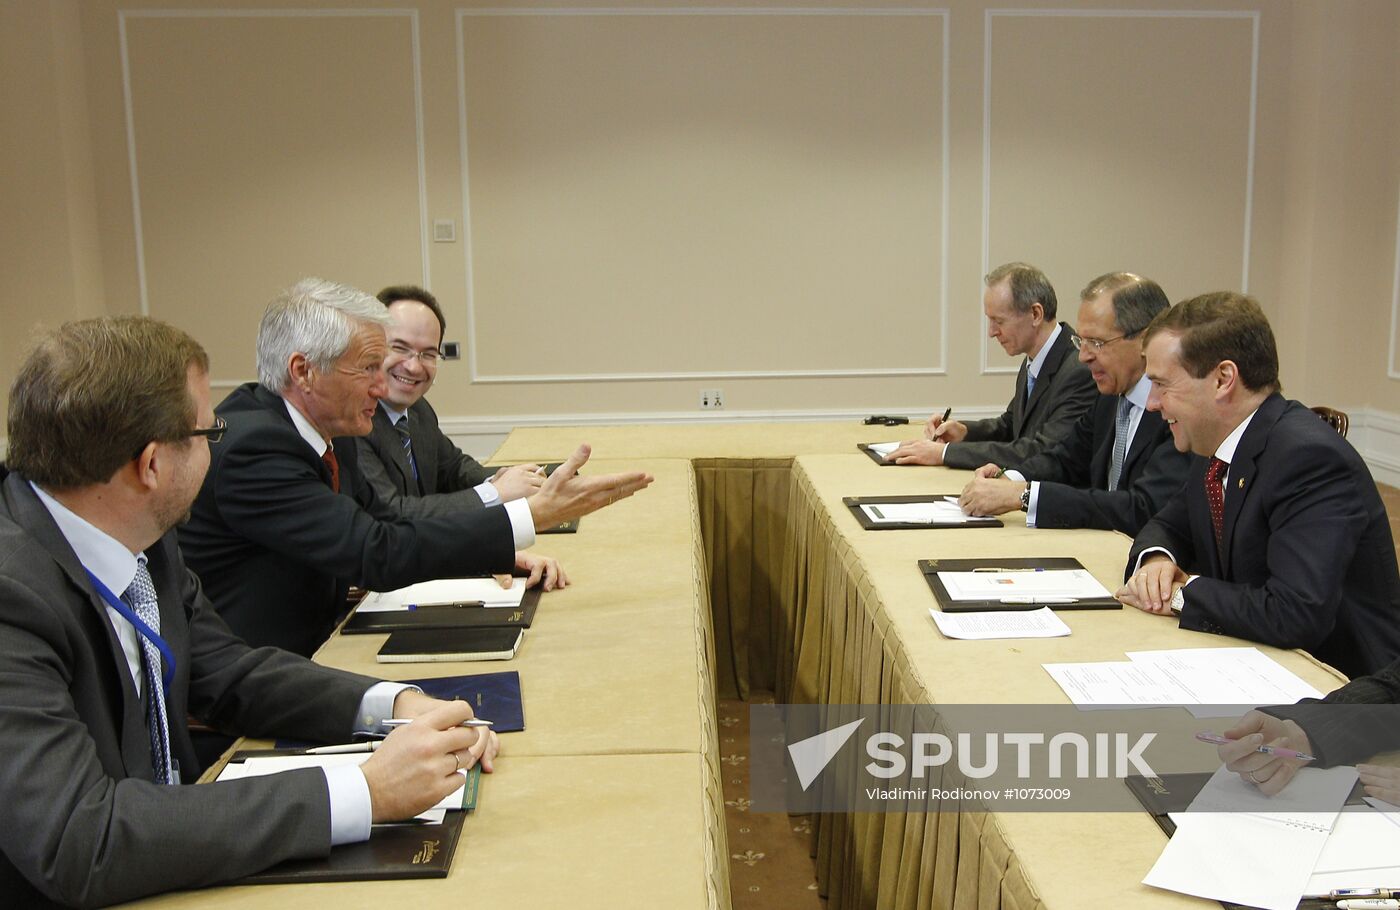 Dmitry Medvedev meets with Thorbjoern Jagland